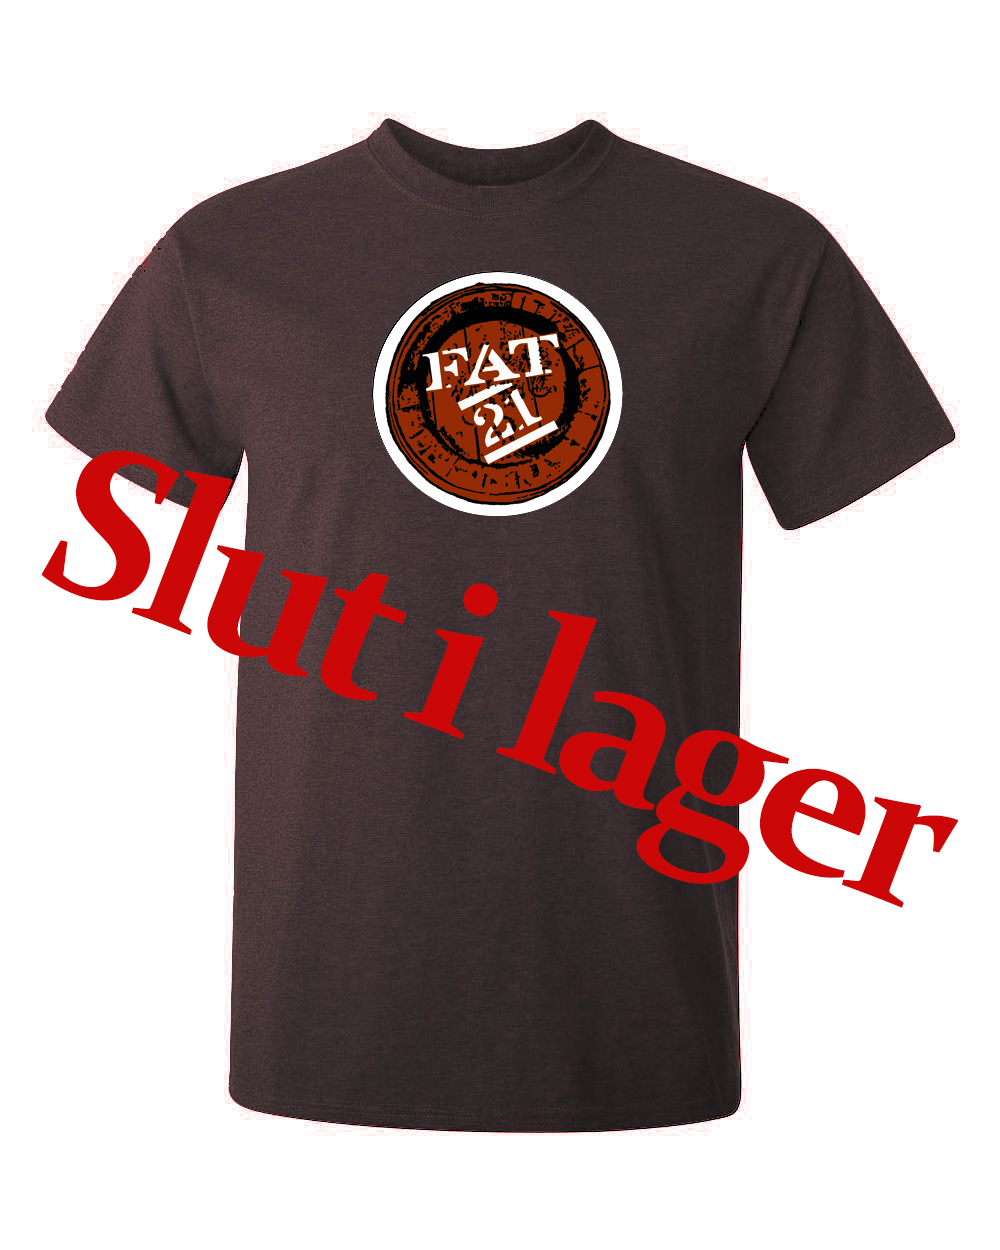 FAT21 logga tryckt på en t-shirt i svart eller brunt. tröjan är av hög kvalitet.